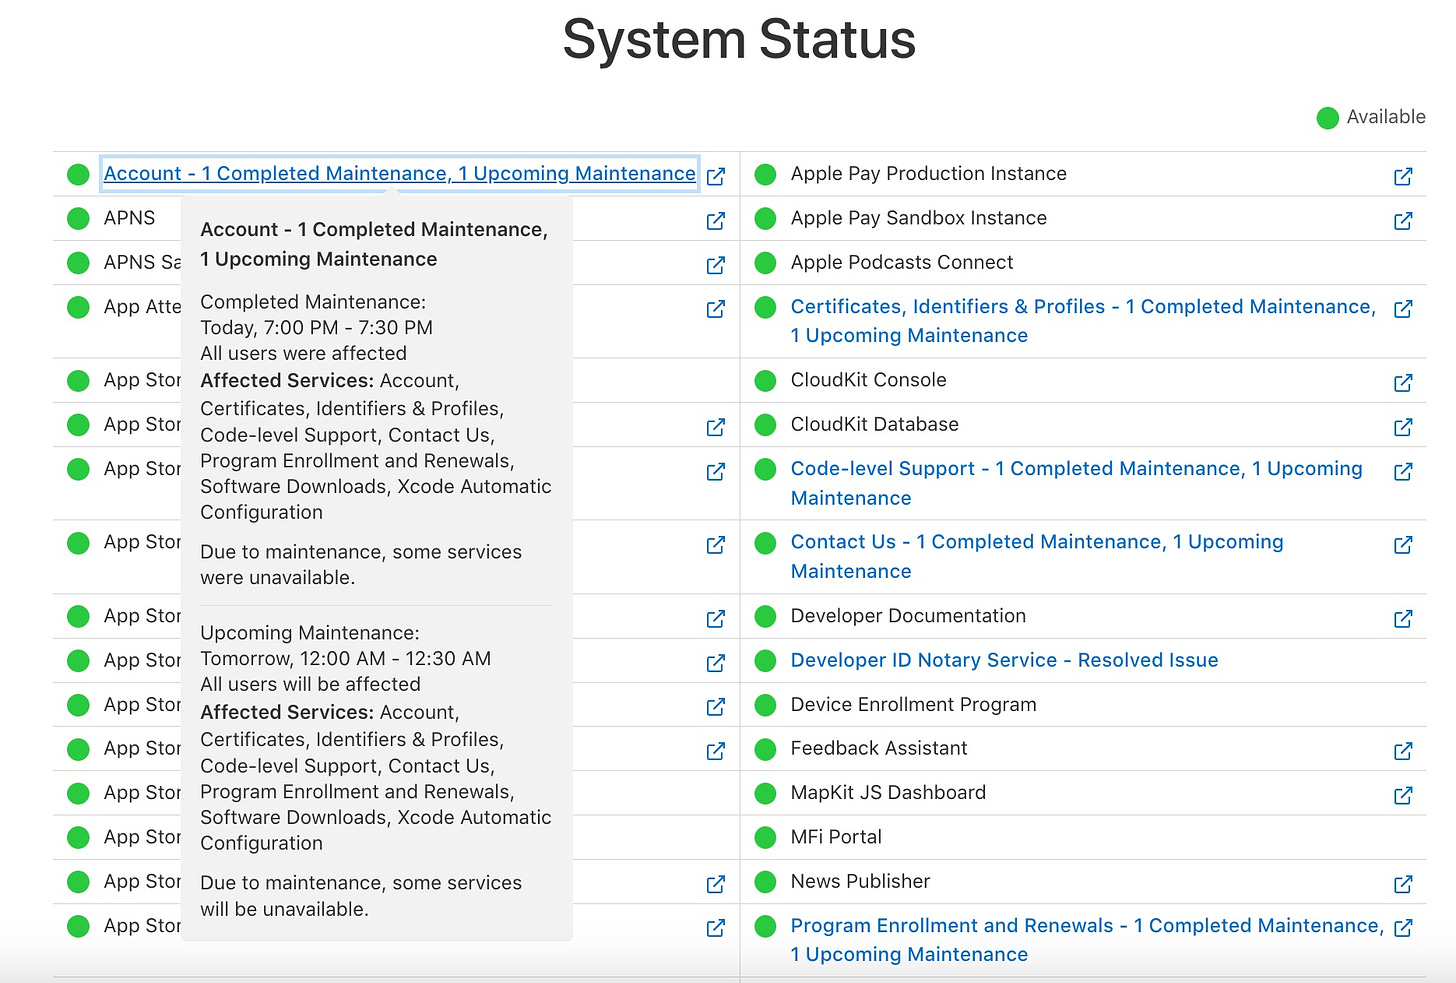 La página de estatus de sevidores dirigida a desarrolladores muestra que hay un mantenimiento en el sistema de cuentas de usuario